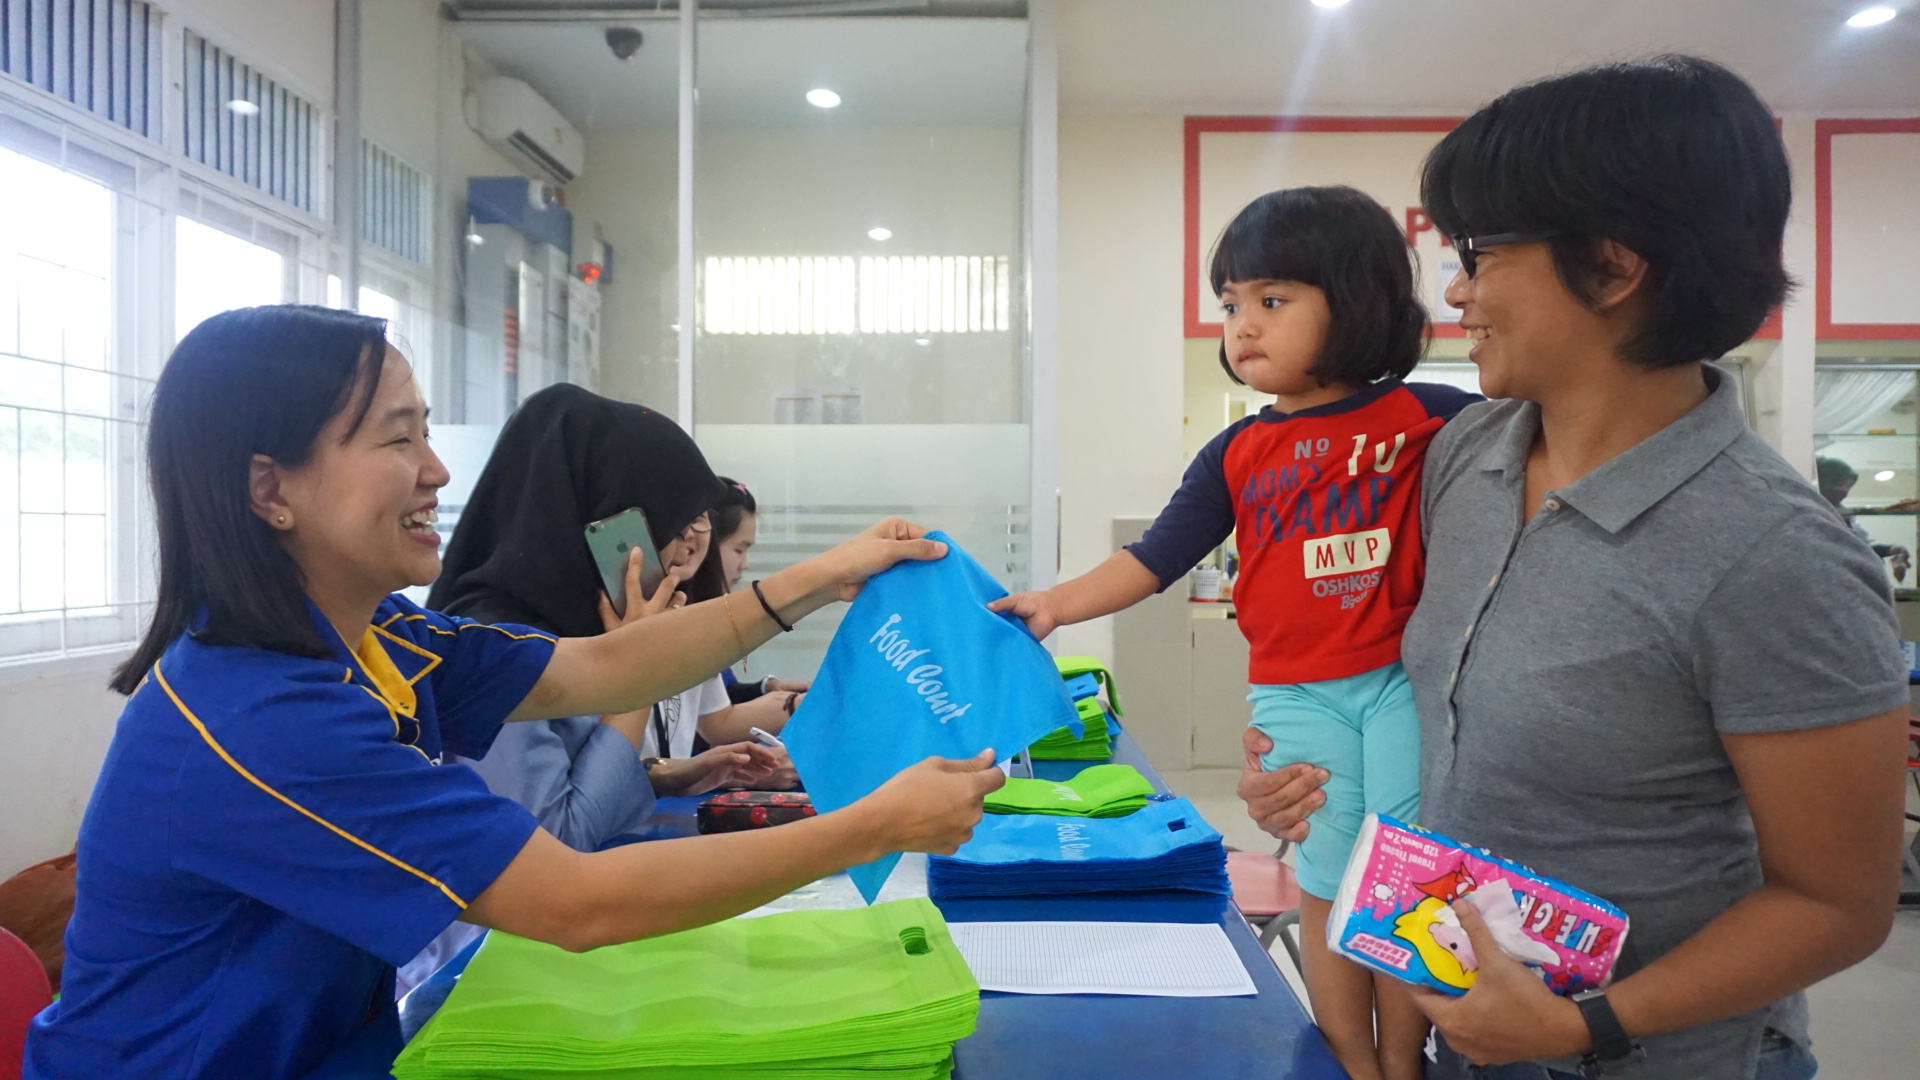  Warga Riau Kompleks antusias untuk mengurangi sampah plastik dengan mengambil kantong berbahan non plastik di Food Court RAPP, Senin (10/9/2018).